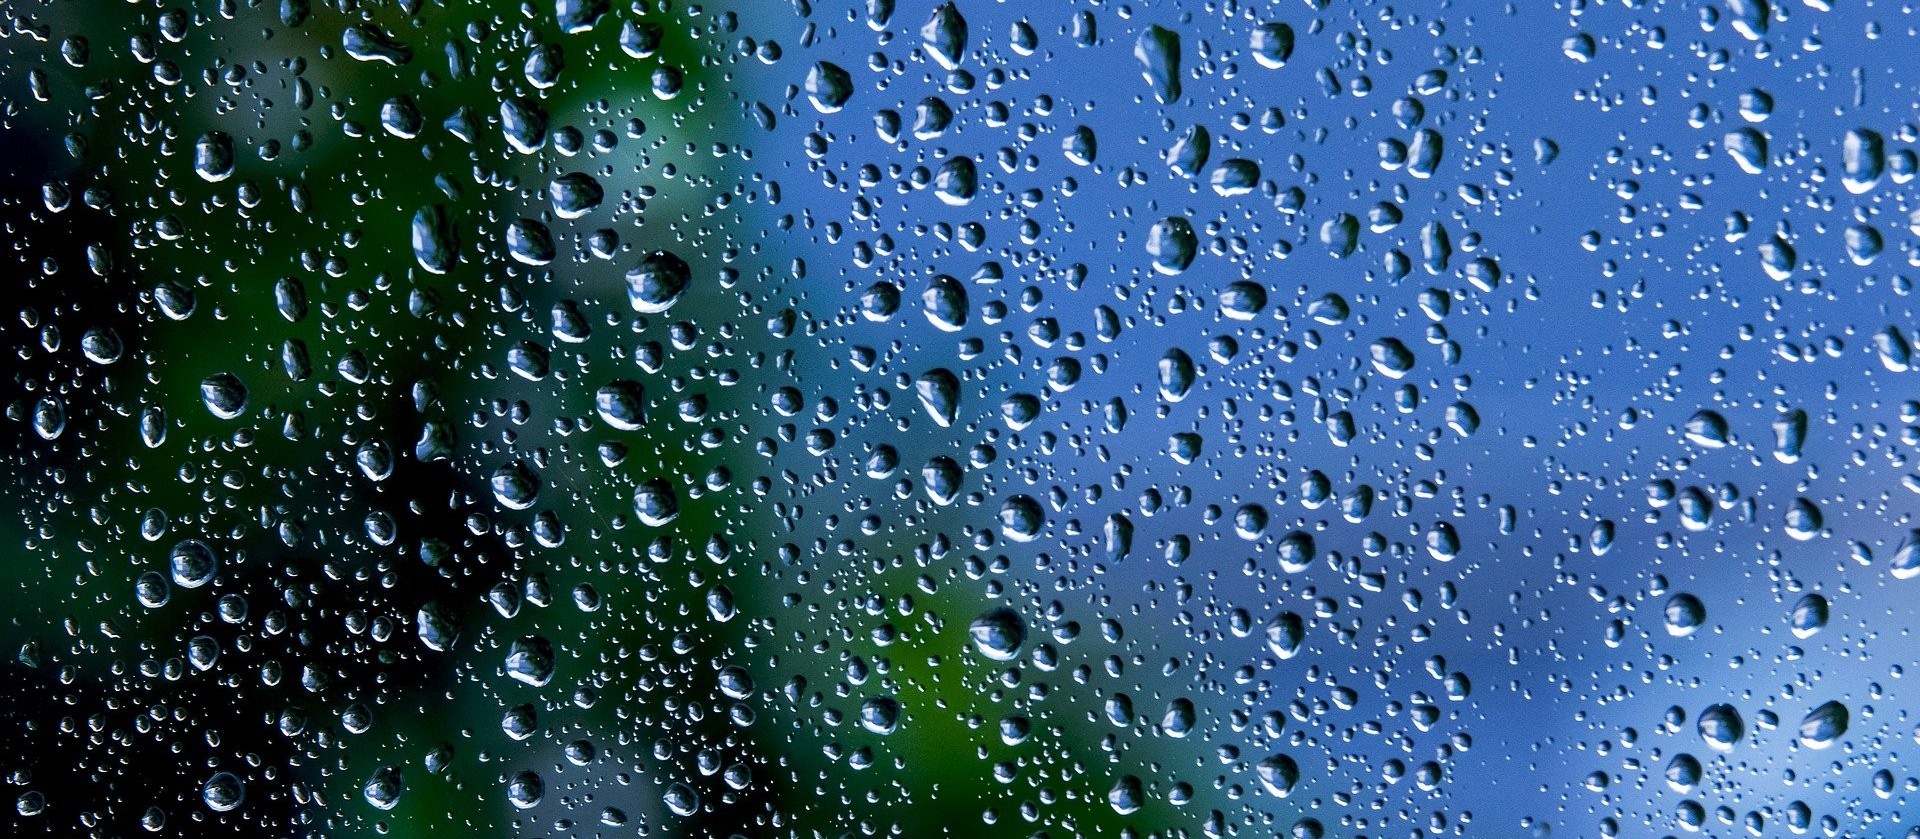 Prefeitura de Cascavel decreta situação de emergência devido falta de chuva